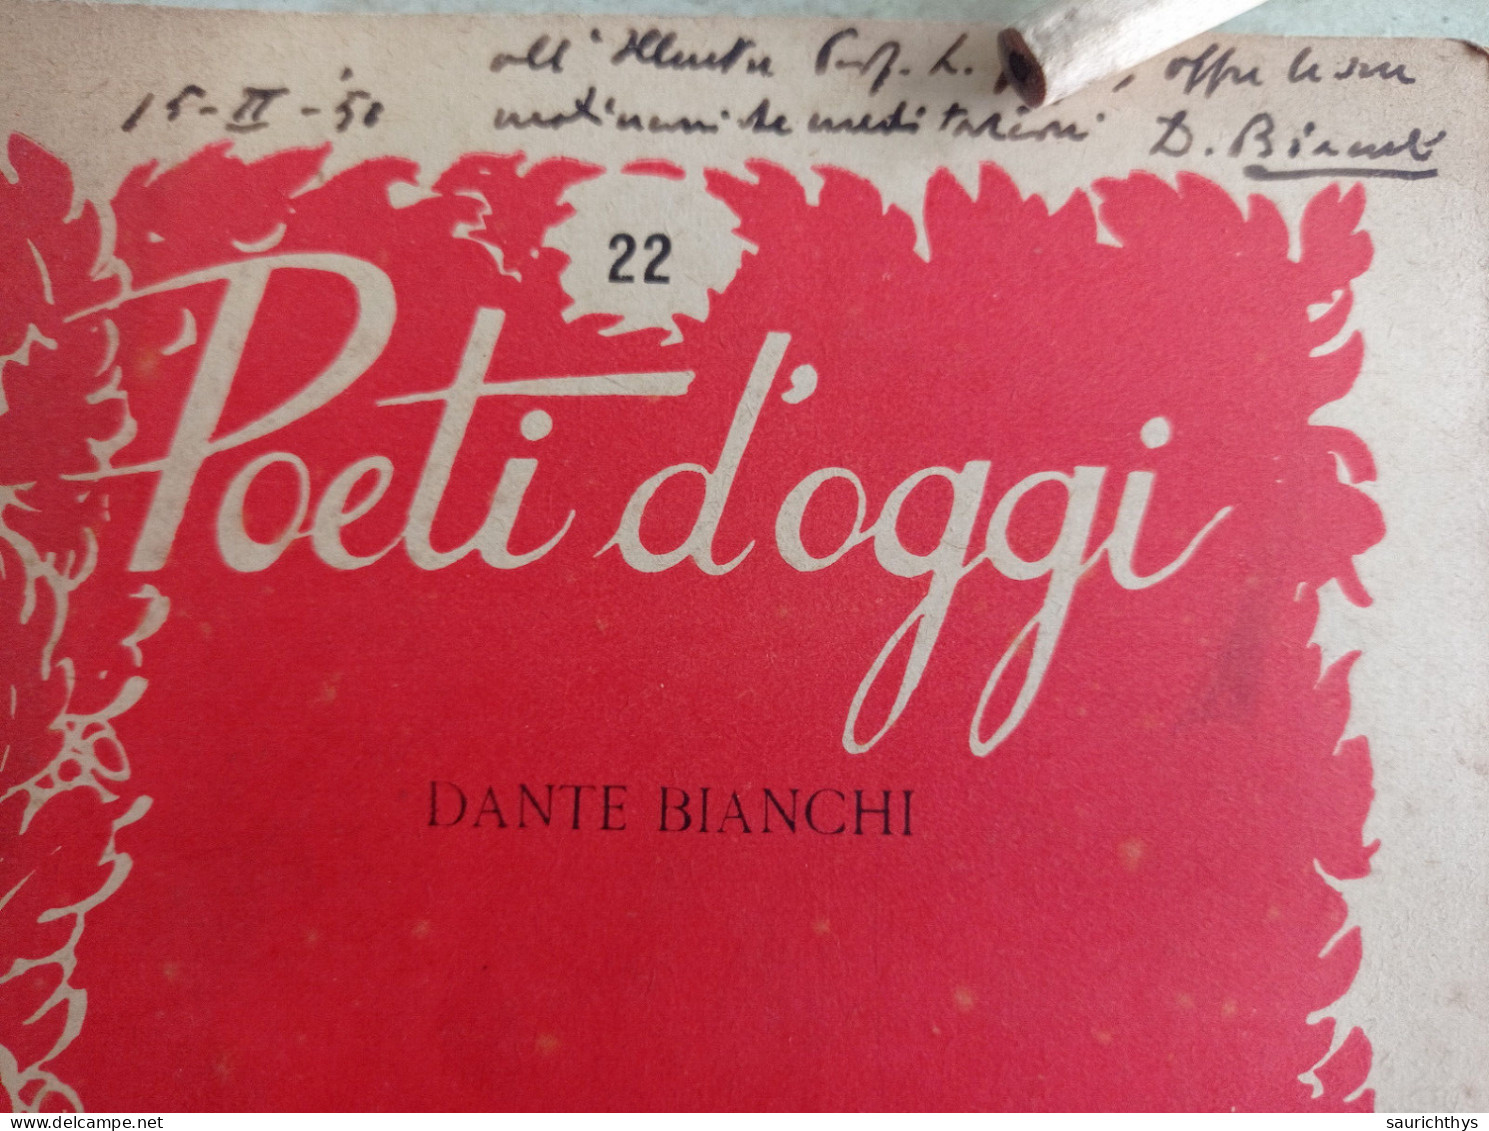 Poeti D'oggi Stralci Gastaldi Editore 1949 Autografo Di Dante Bianchi A Noto Accademico - Poesie